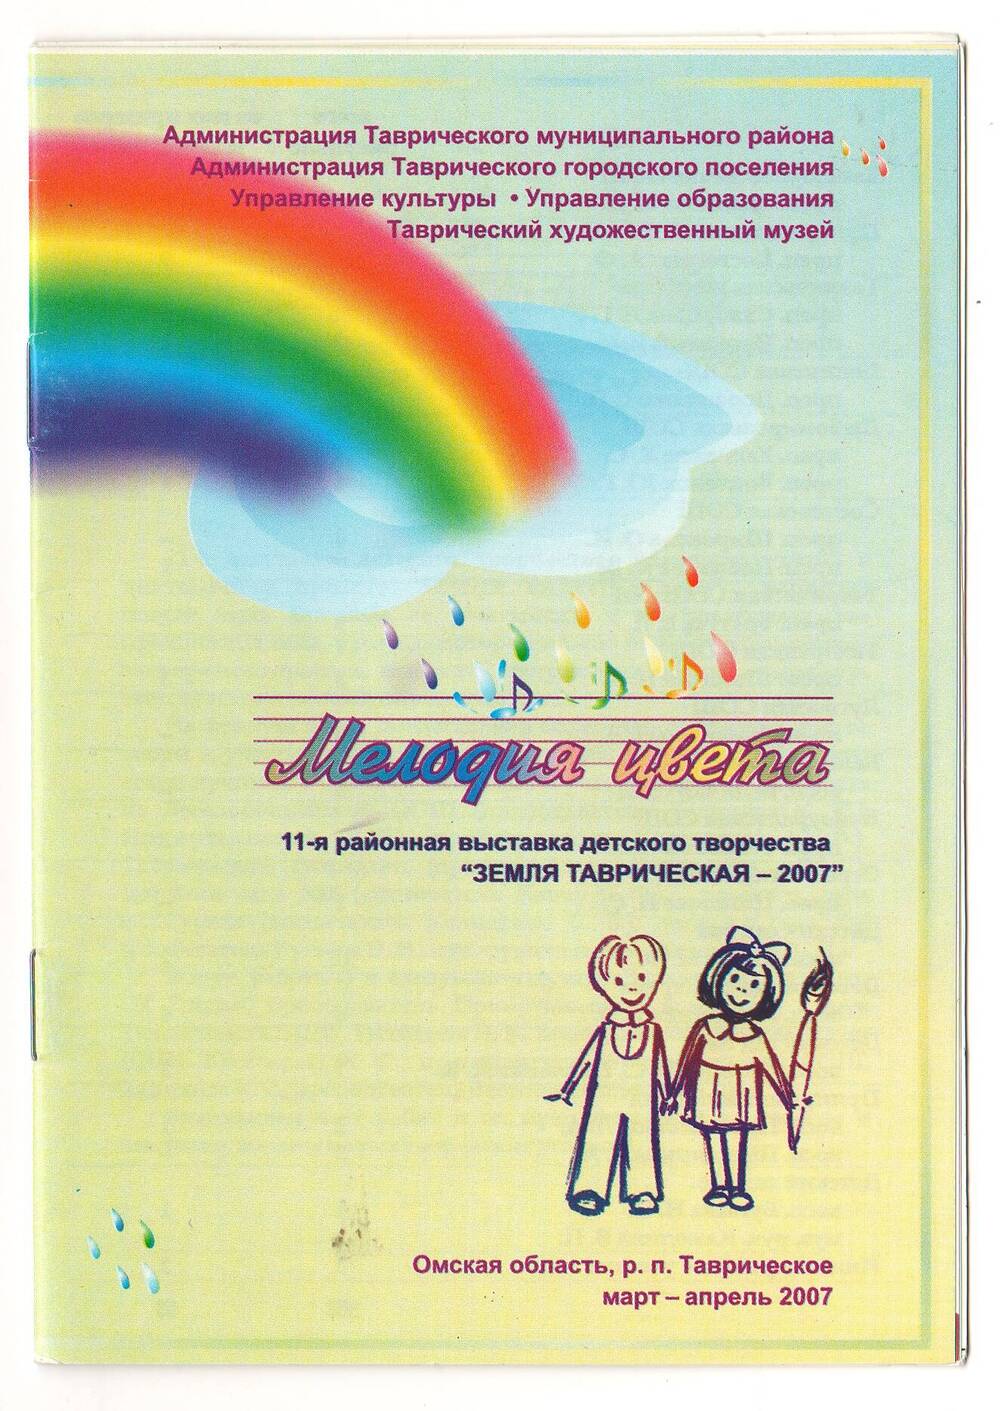 Буклет 11-й районной выставки детского творчества Земля Таврическая - 2007 - Мелодия цвета.